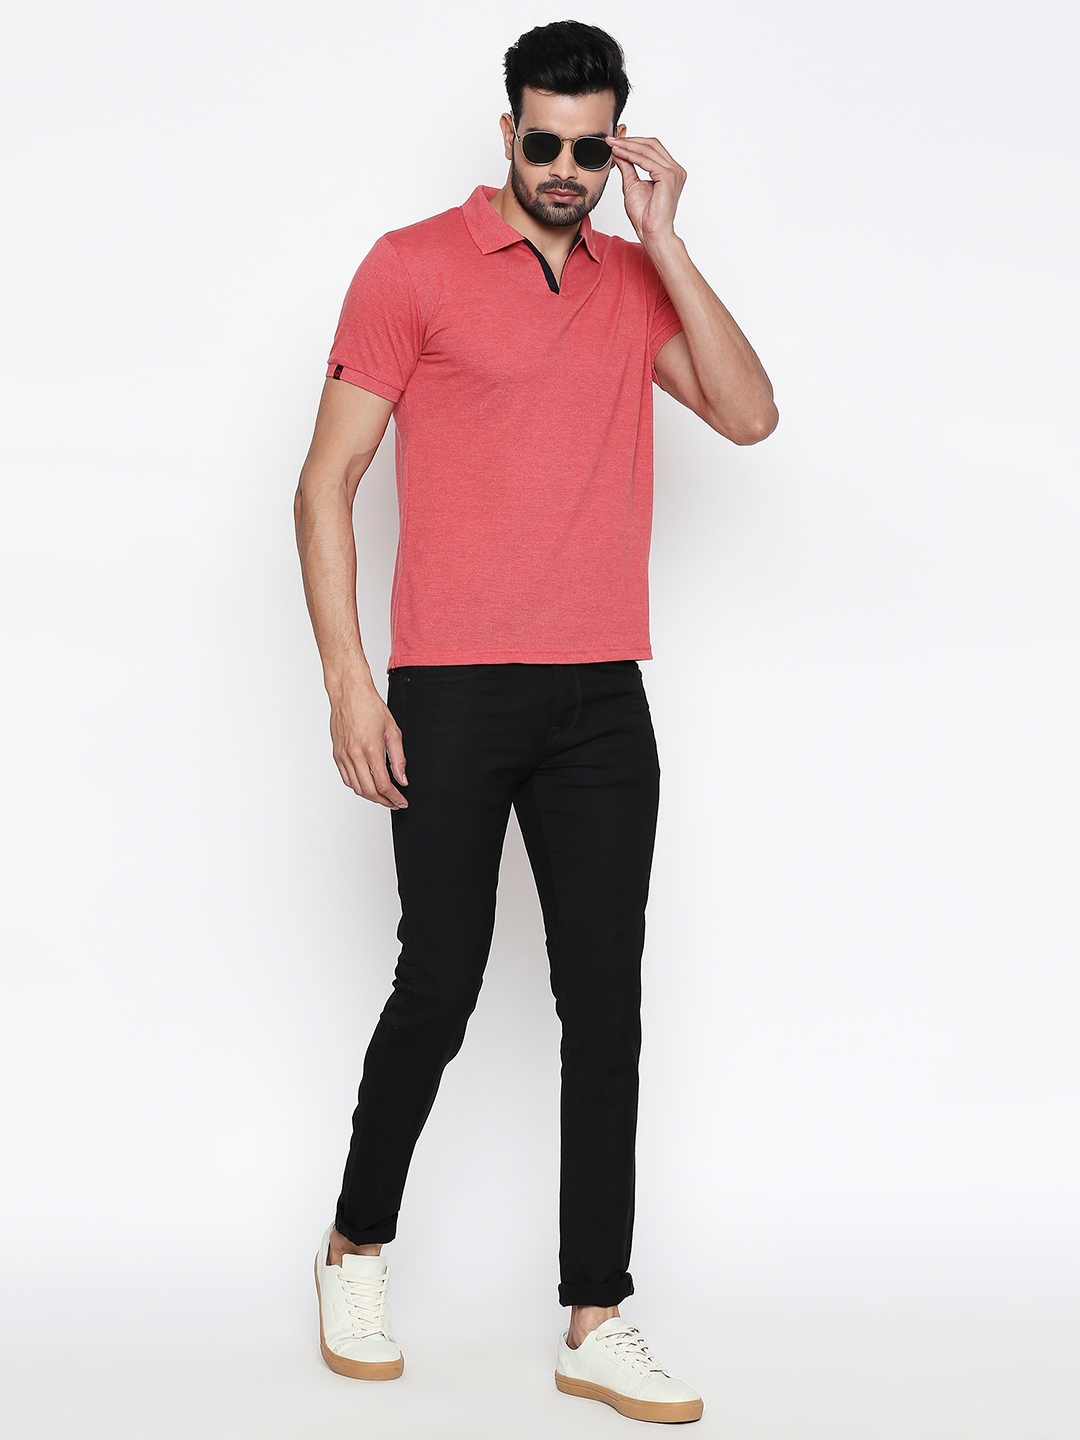 Integriti | Integriti Red Slim Fit Men's T-Shirts 3